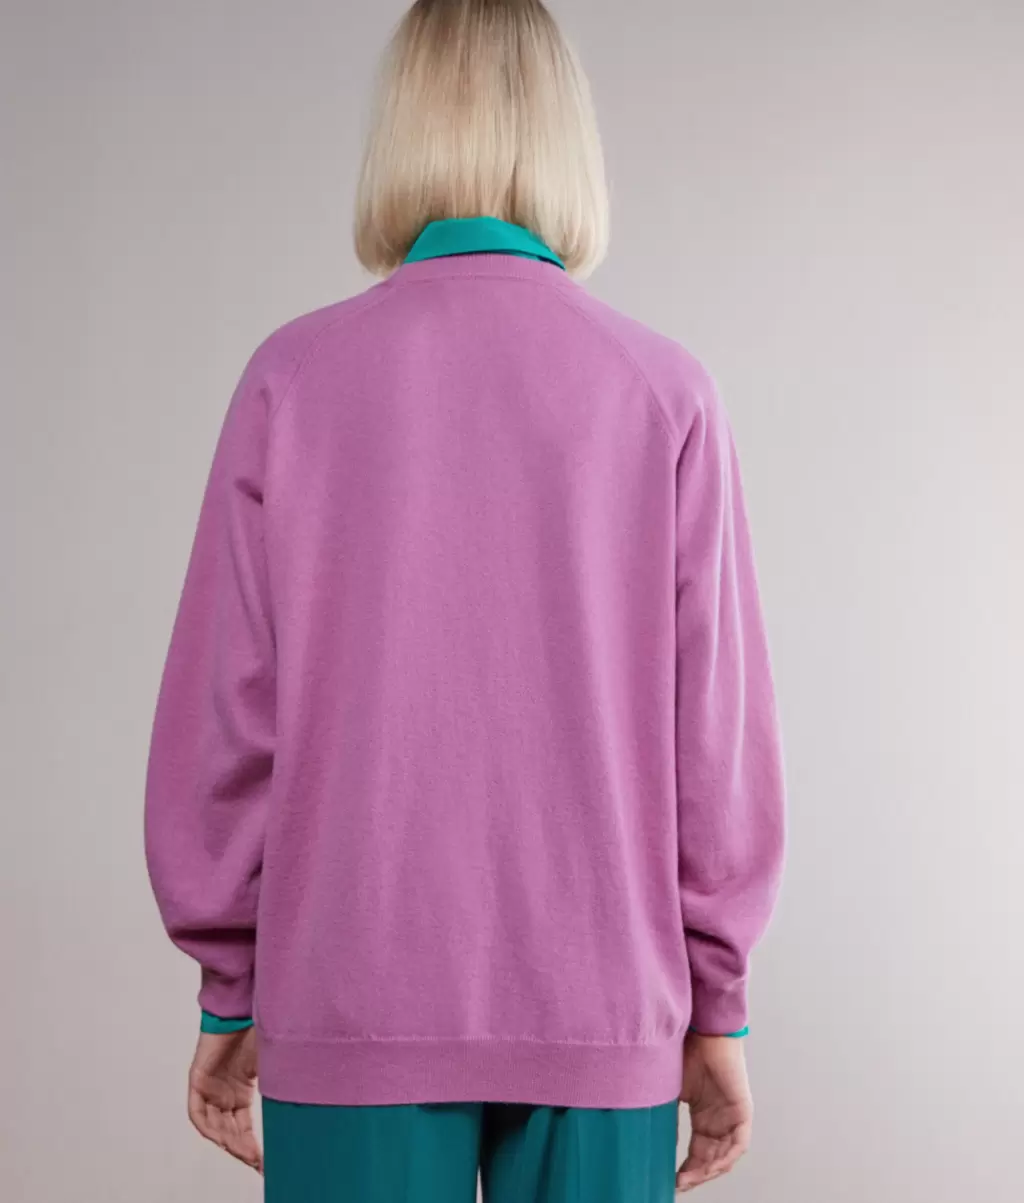 Falconeri Swetry Z Okrągłym Dekoltem Kobieta Bluzka Maxi Z Okągłym Dekoltem Z Kaszmiru Ultrasoft Pink - 2